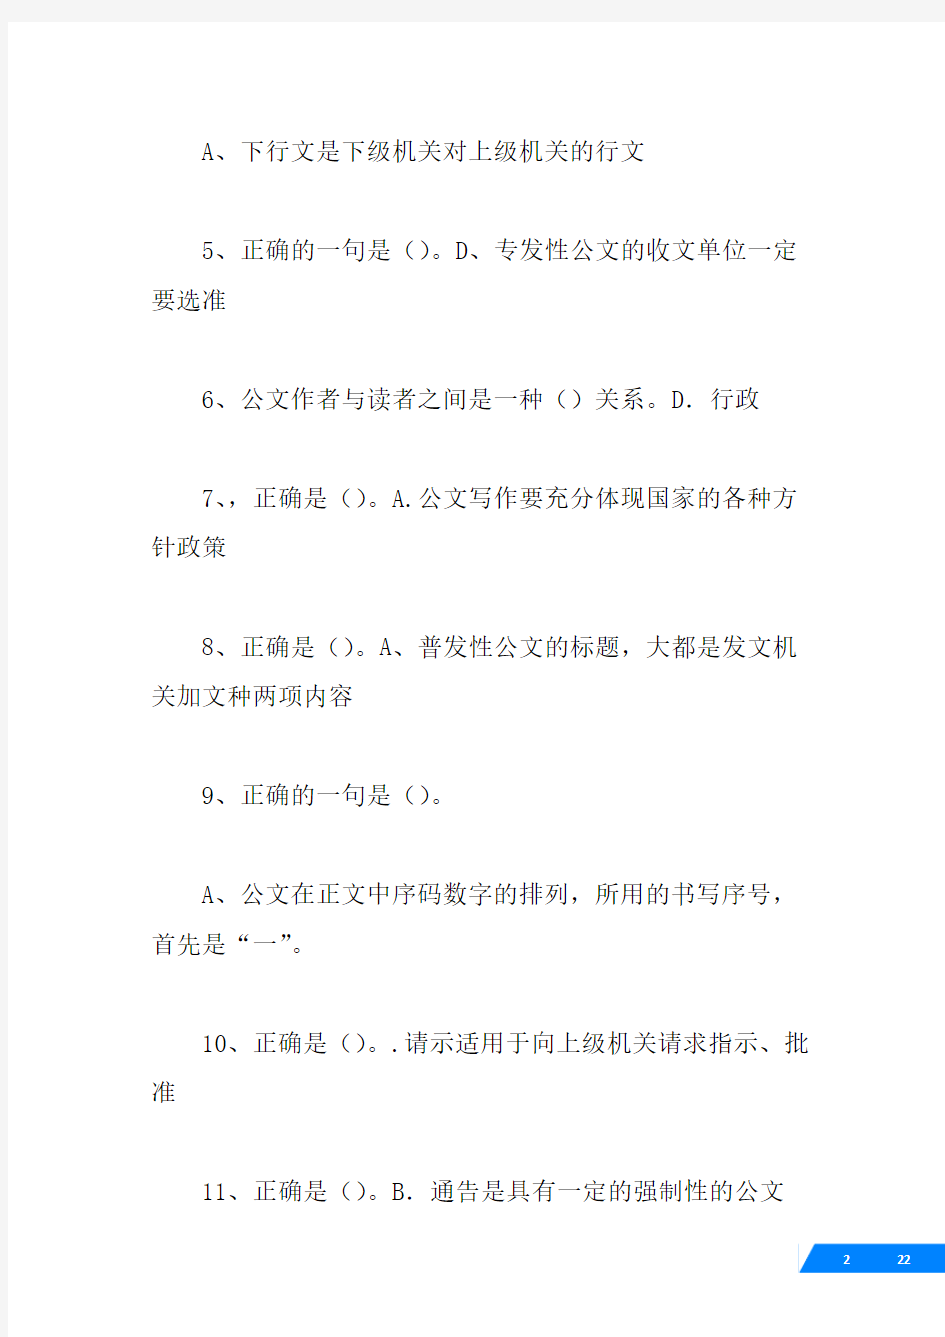 (√)北京外经贸学校《大学语文(含公文写作)》作业